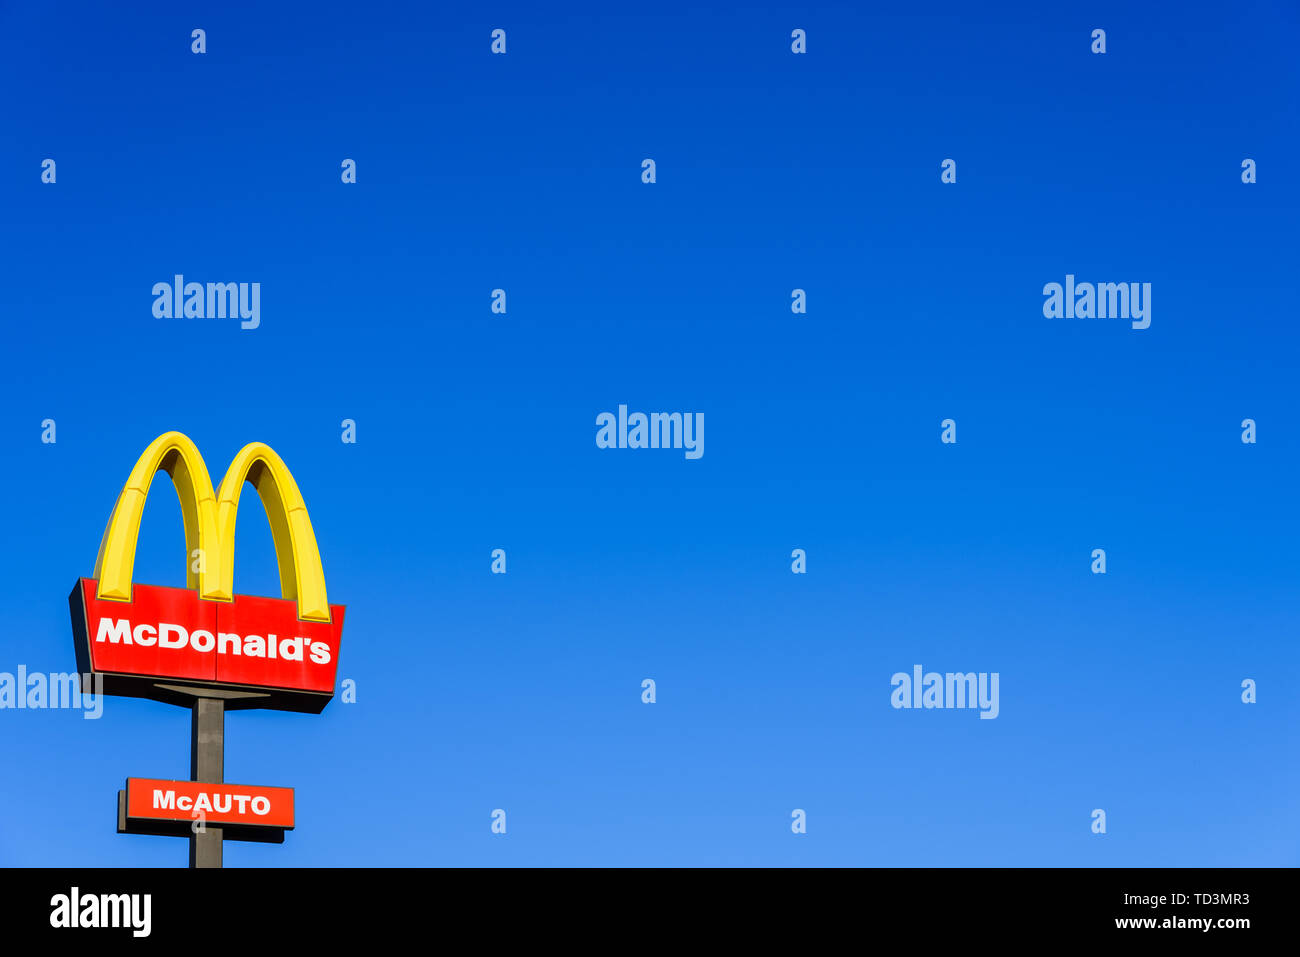 Valencia, Espagne - 29 mai 2019 : Affiche publicitaire de McDonald's restaurant en Espagne, la marque visible de l'autoroute. Copier l'espace. Banque D'Images